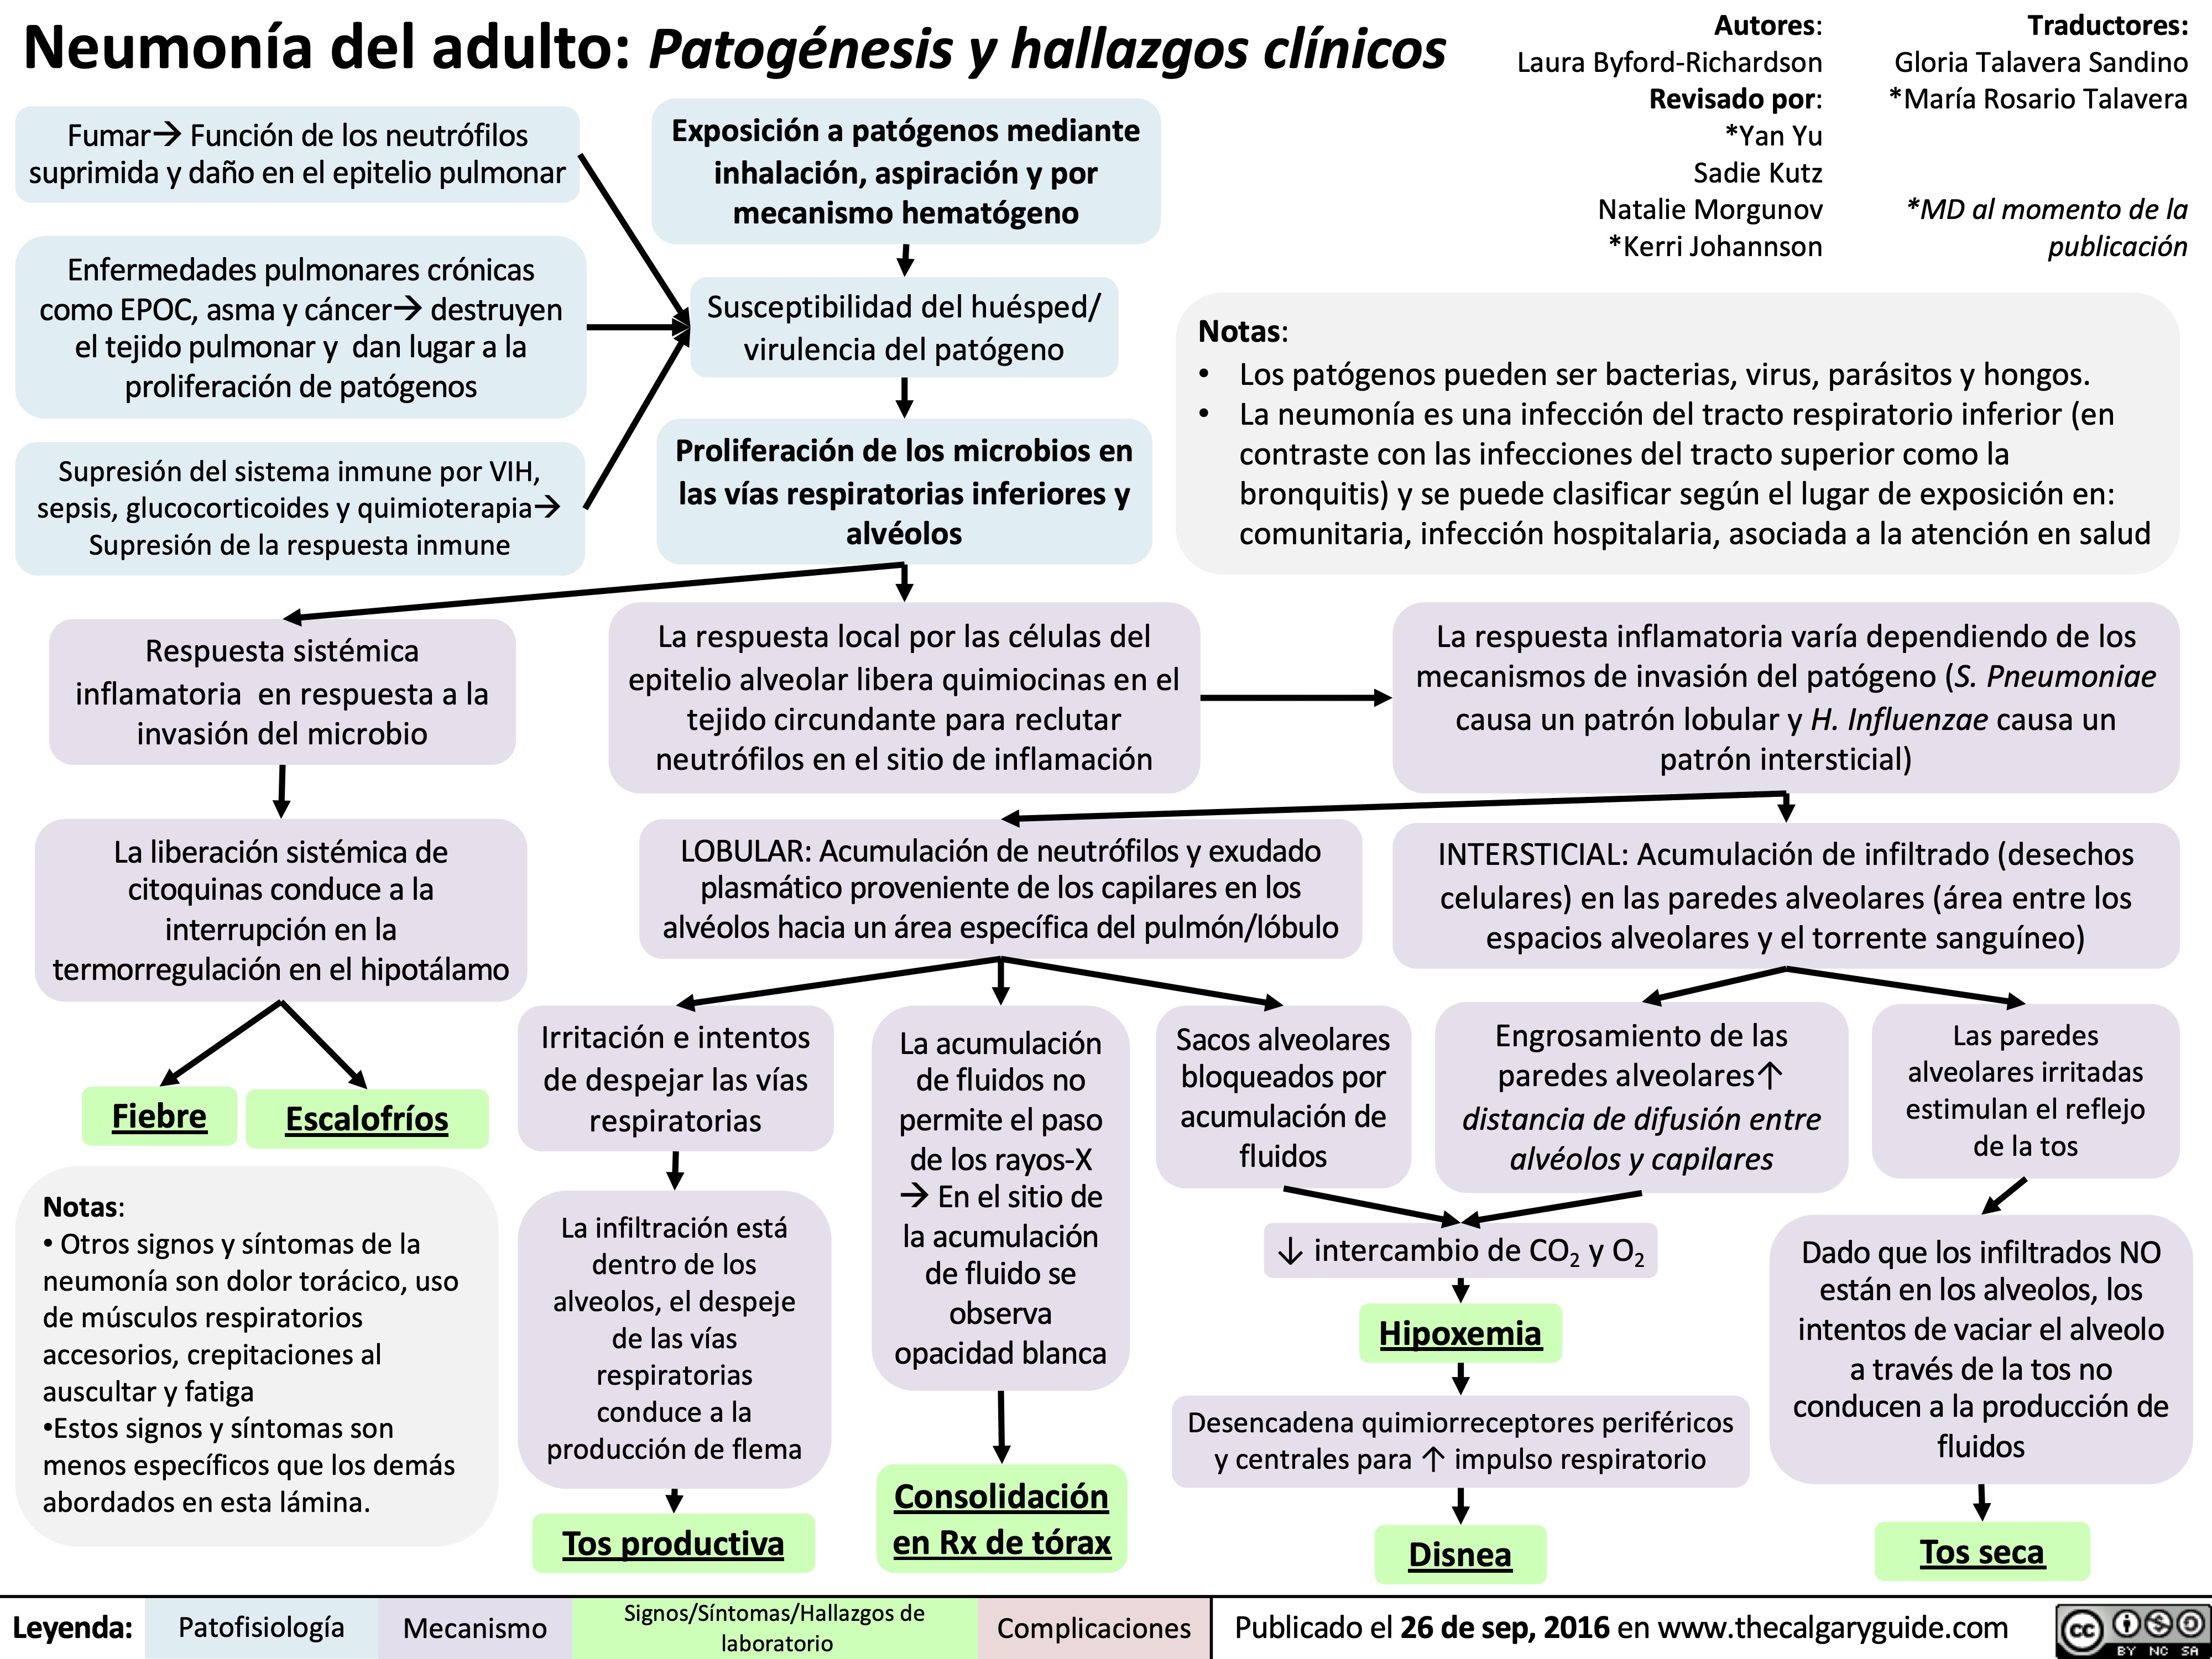 Neumonía del adulto: Patogénesis y hallazgos clínicos

neumonia-del-adulto-patogenesis-y-hallazgos-clinicos